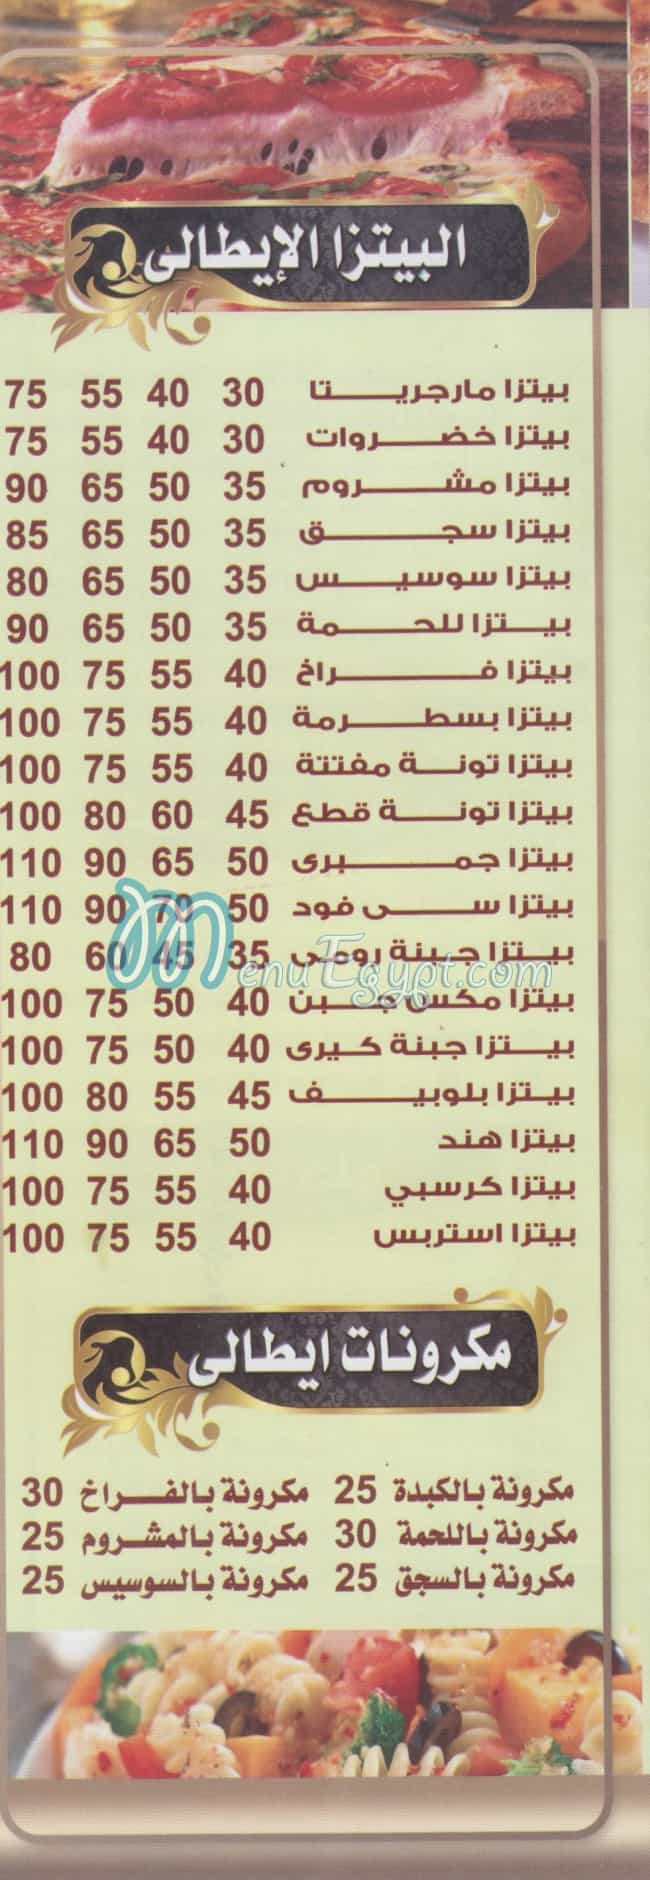 Koshary Hend El Maadi menu Egypt 1